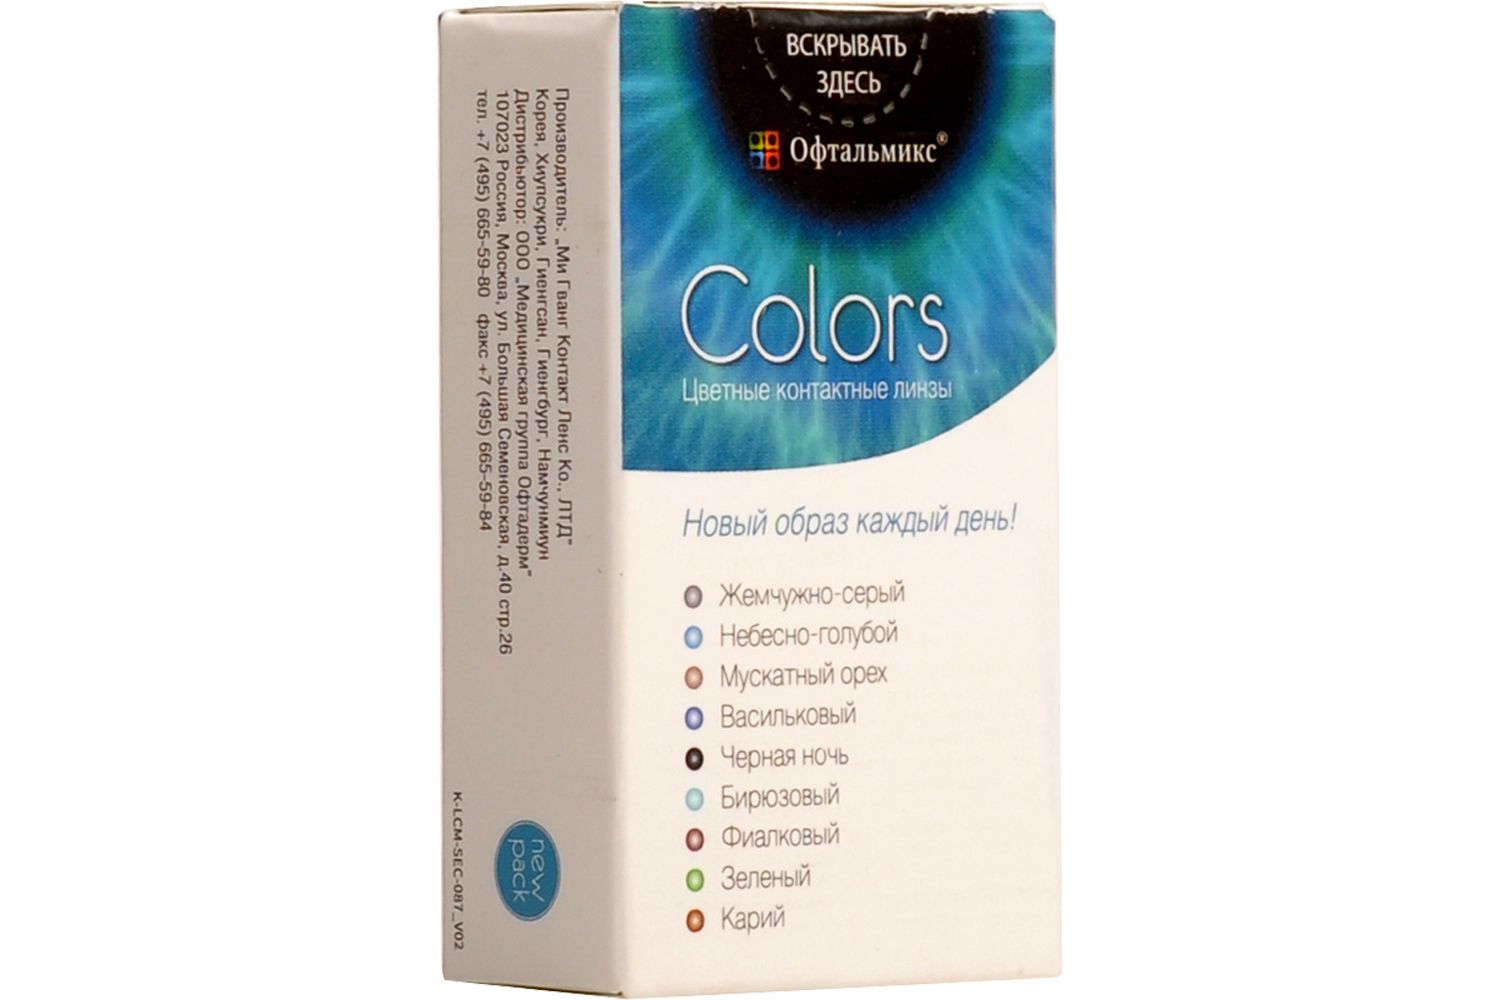 Купить Colors 2 линзы, Цветные контактные линзы Офтальмикс Colors, 2 шт. PWR -5, 00, R 8.6, Olive